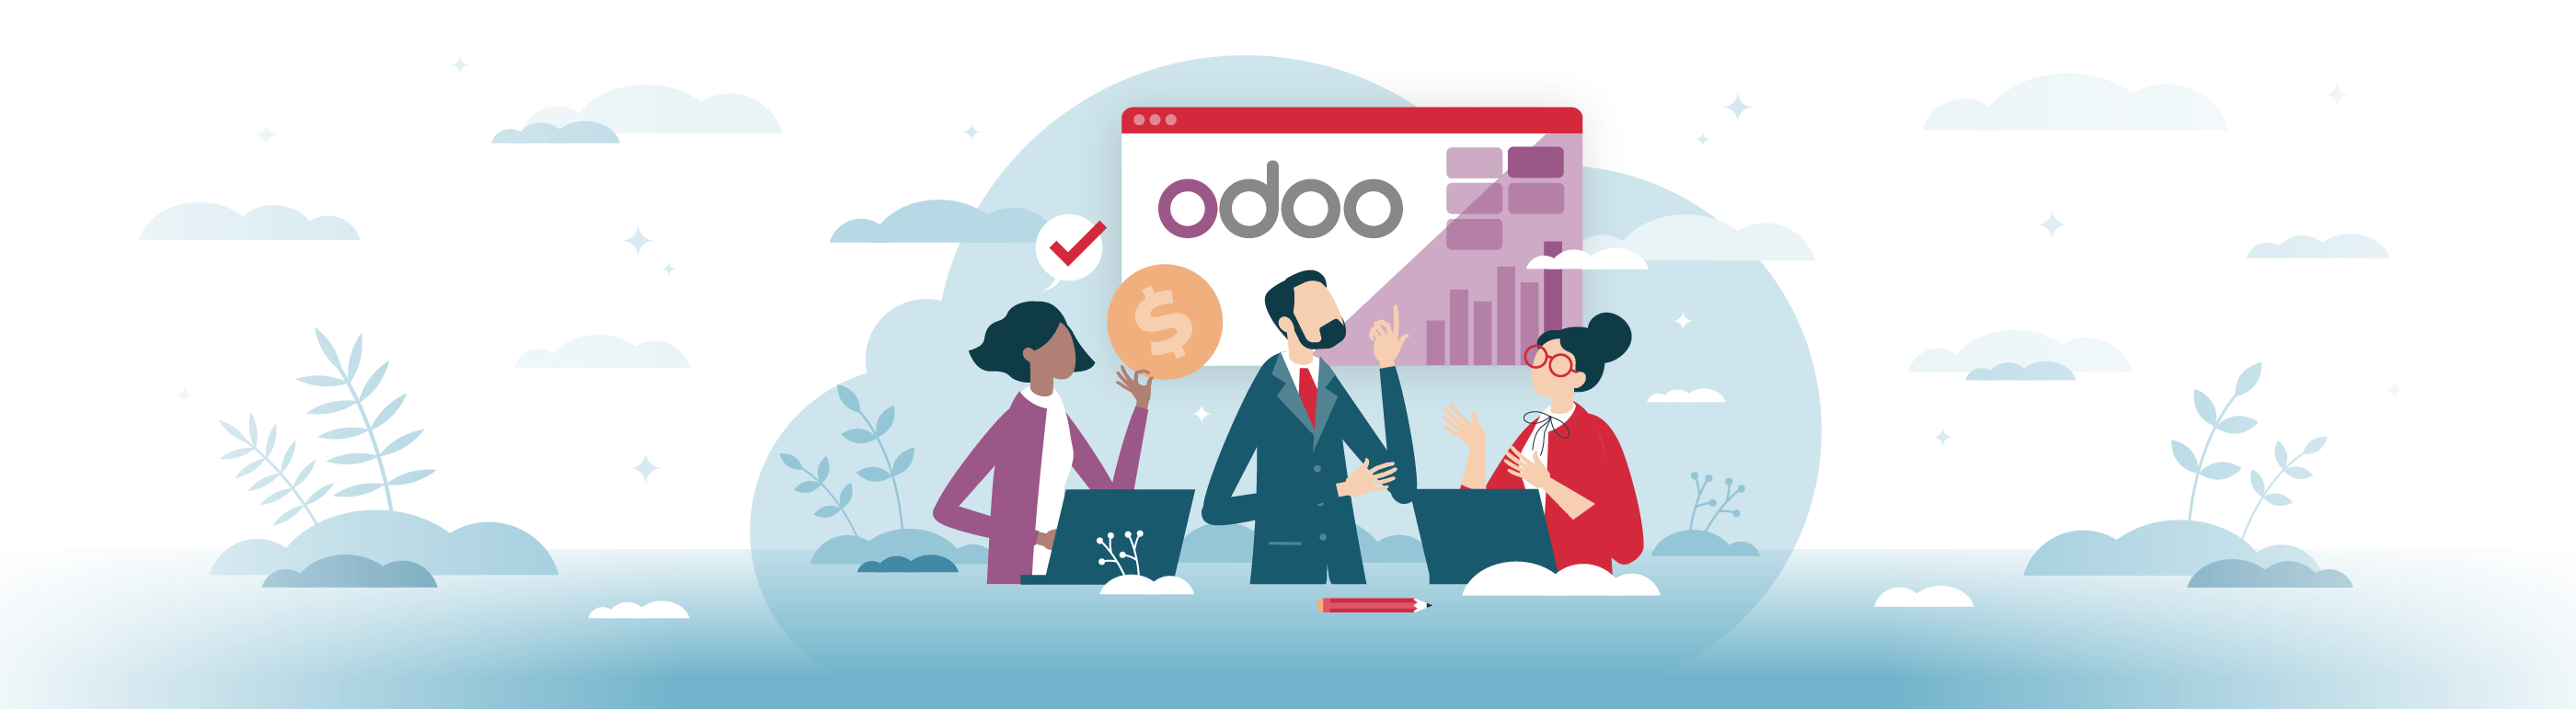 7 Odoo Apps für die Optimierung Ihrer Geschäftsprozesse